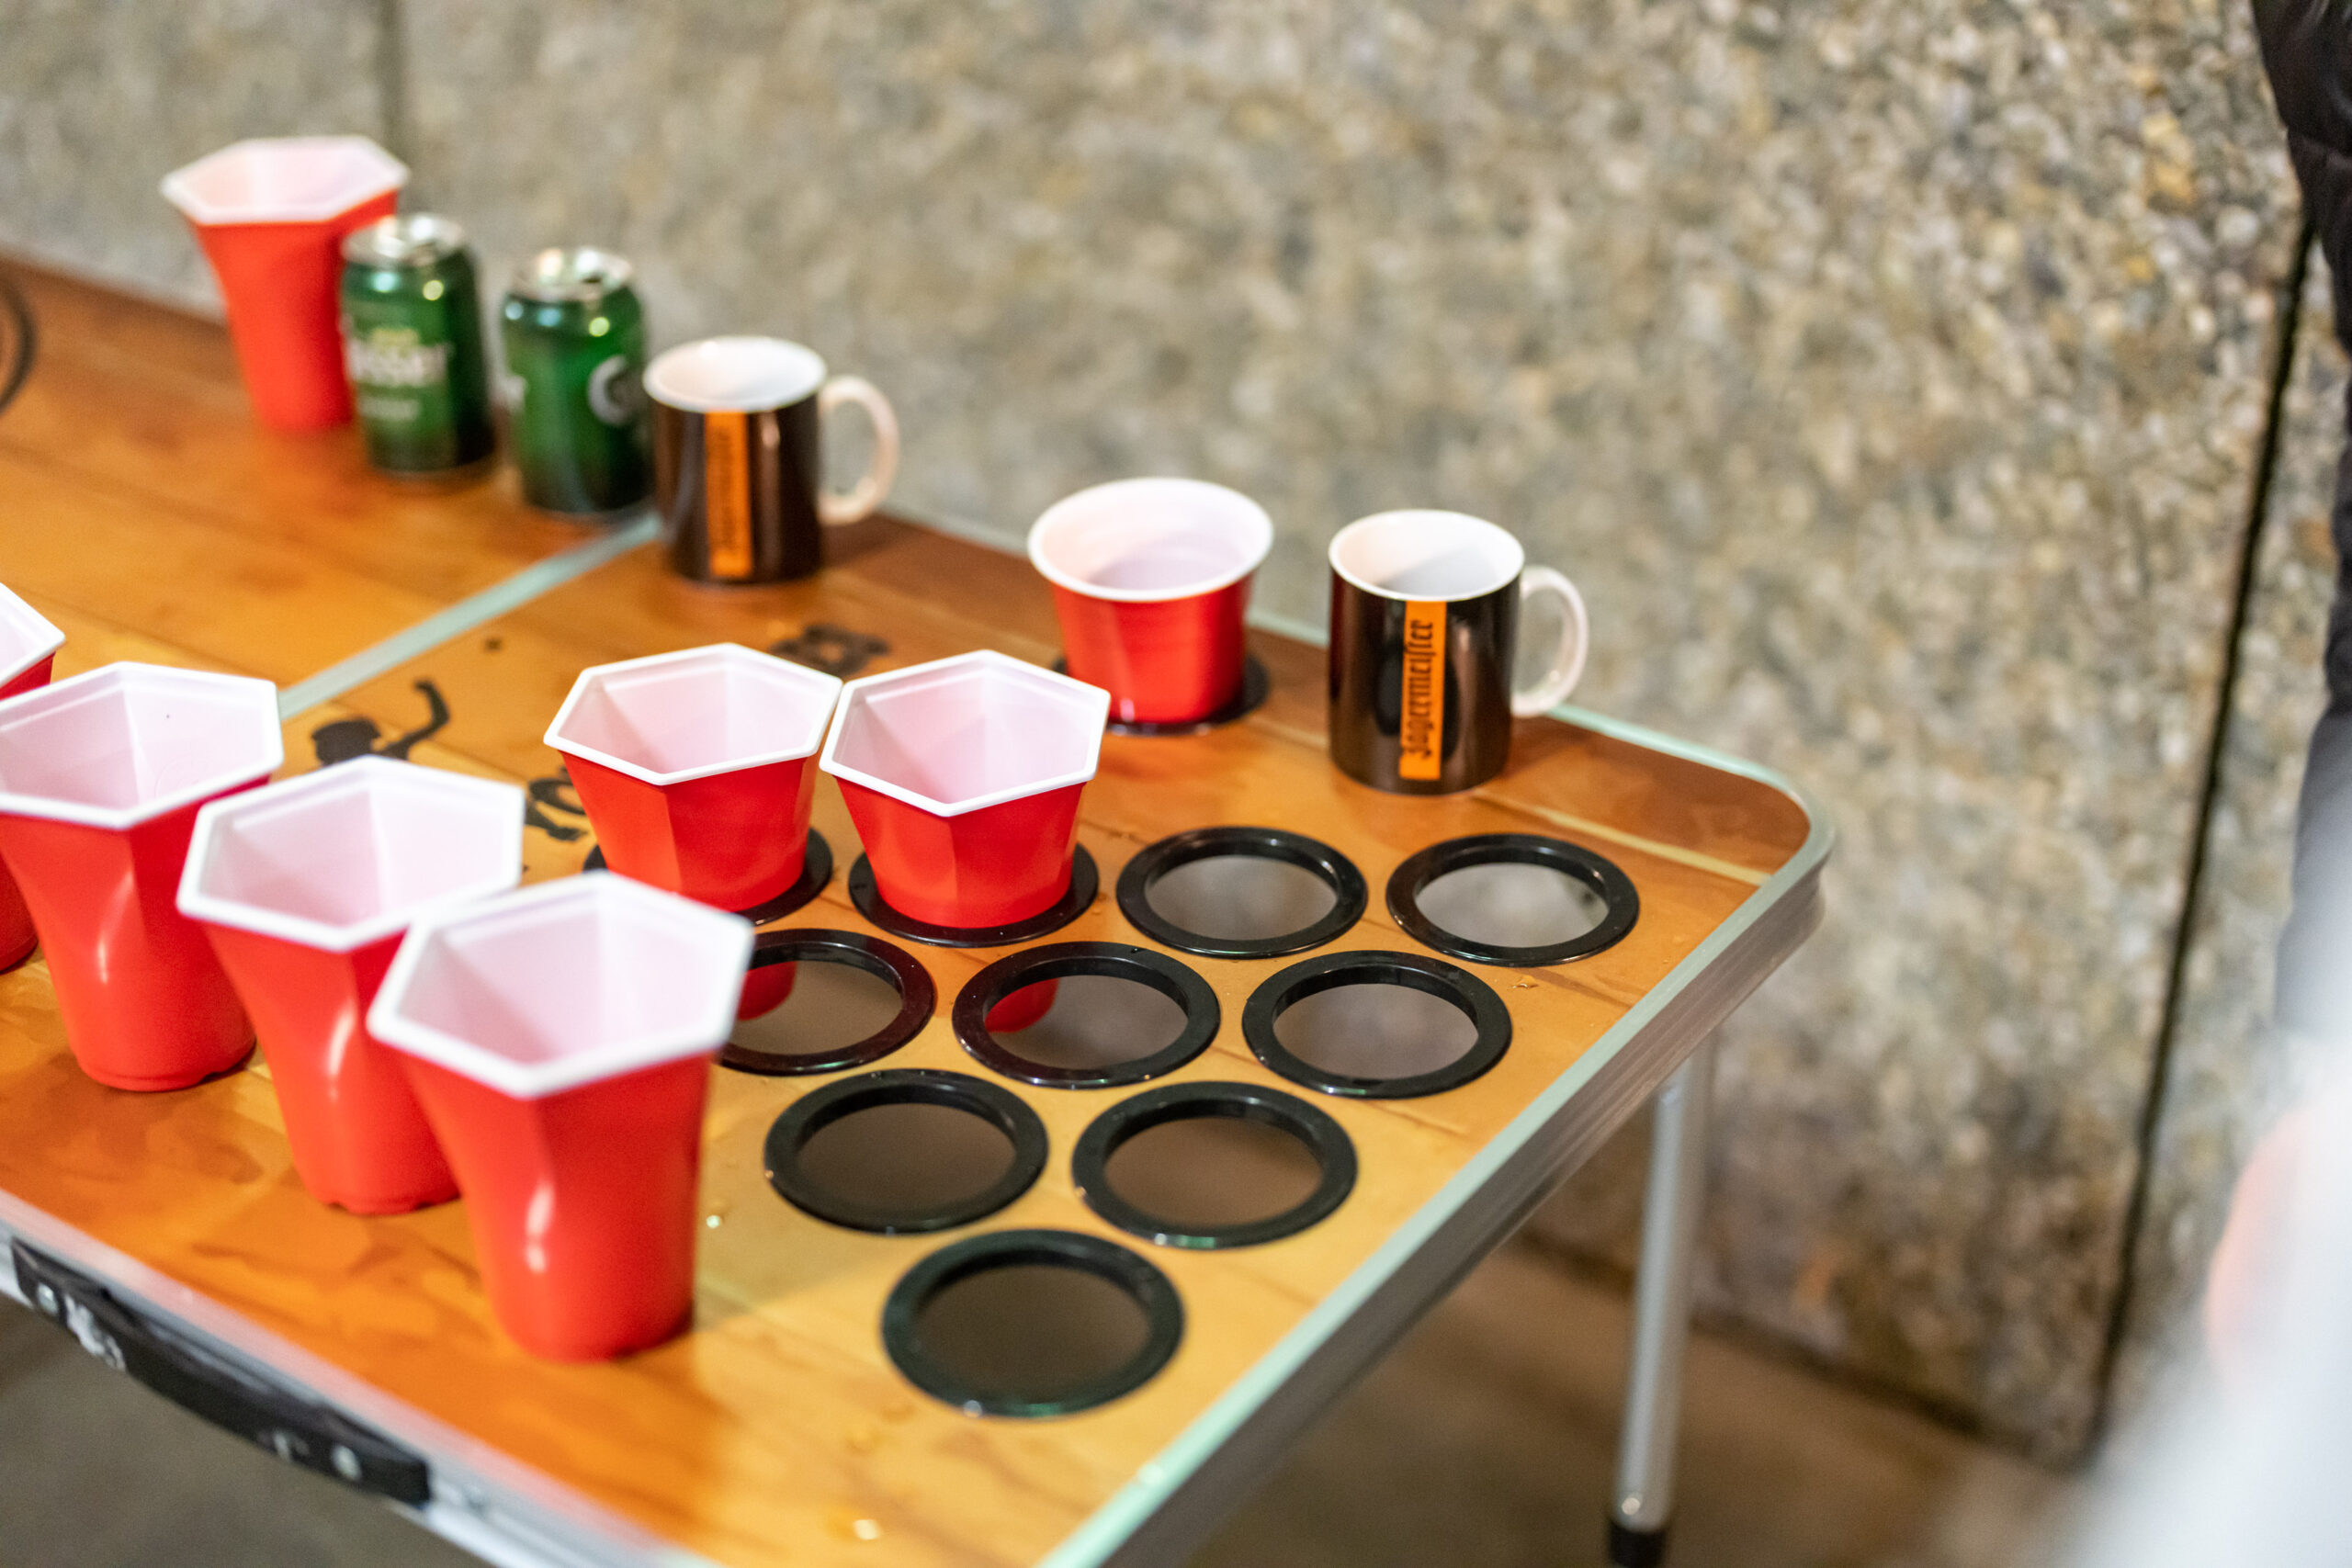 Backspin Beer Pong Tisch Set Wood, Aluminiumtisch mit Tragegriffen, Eisfach für Kaltgetränke, Becherhalterung, Ballhalter inkl. 6 Beer Pong  Bälle, spritzwassergeschützte Spieloberfläche